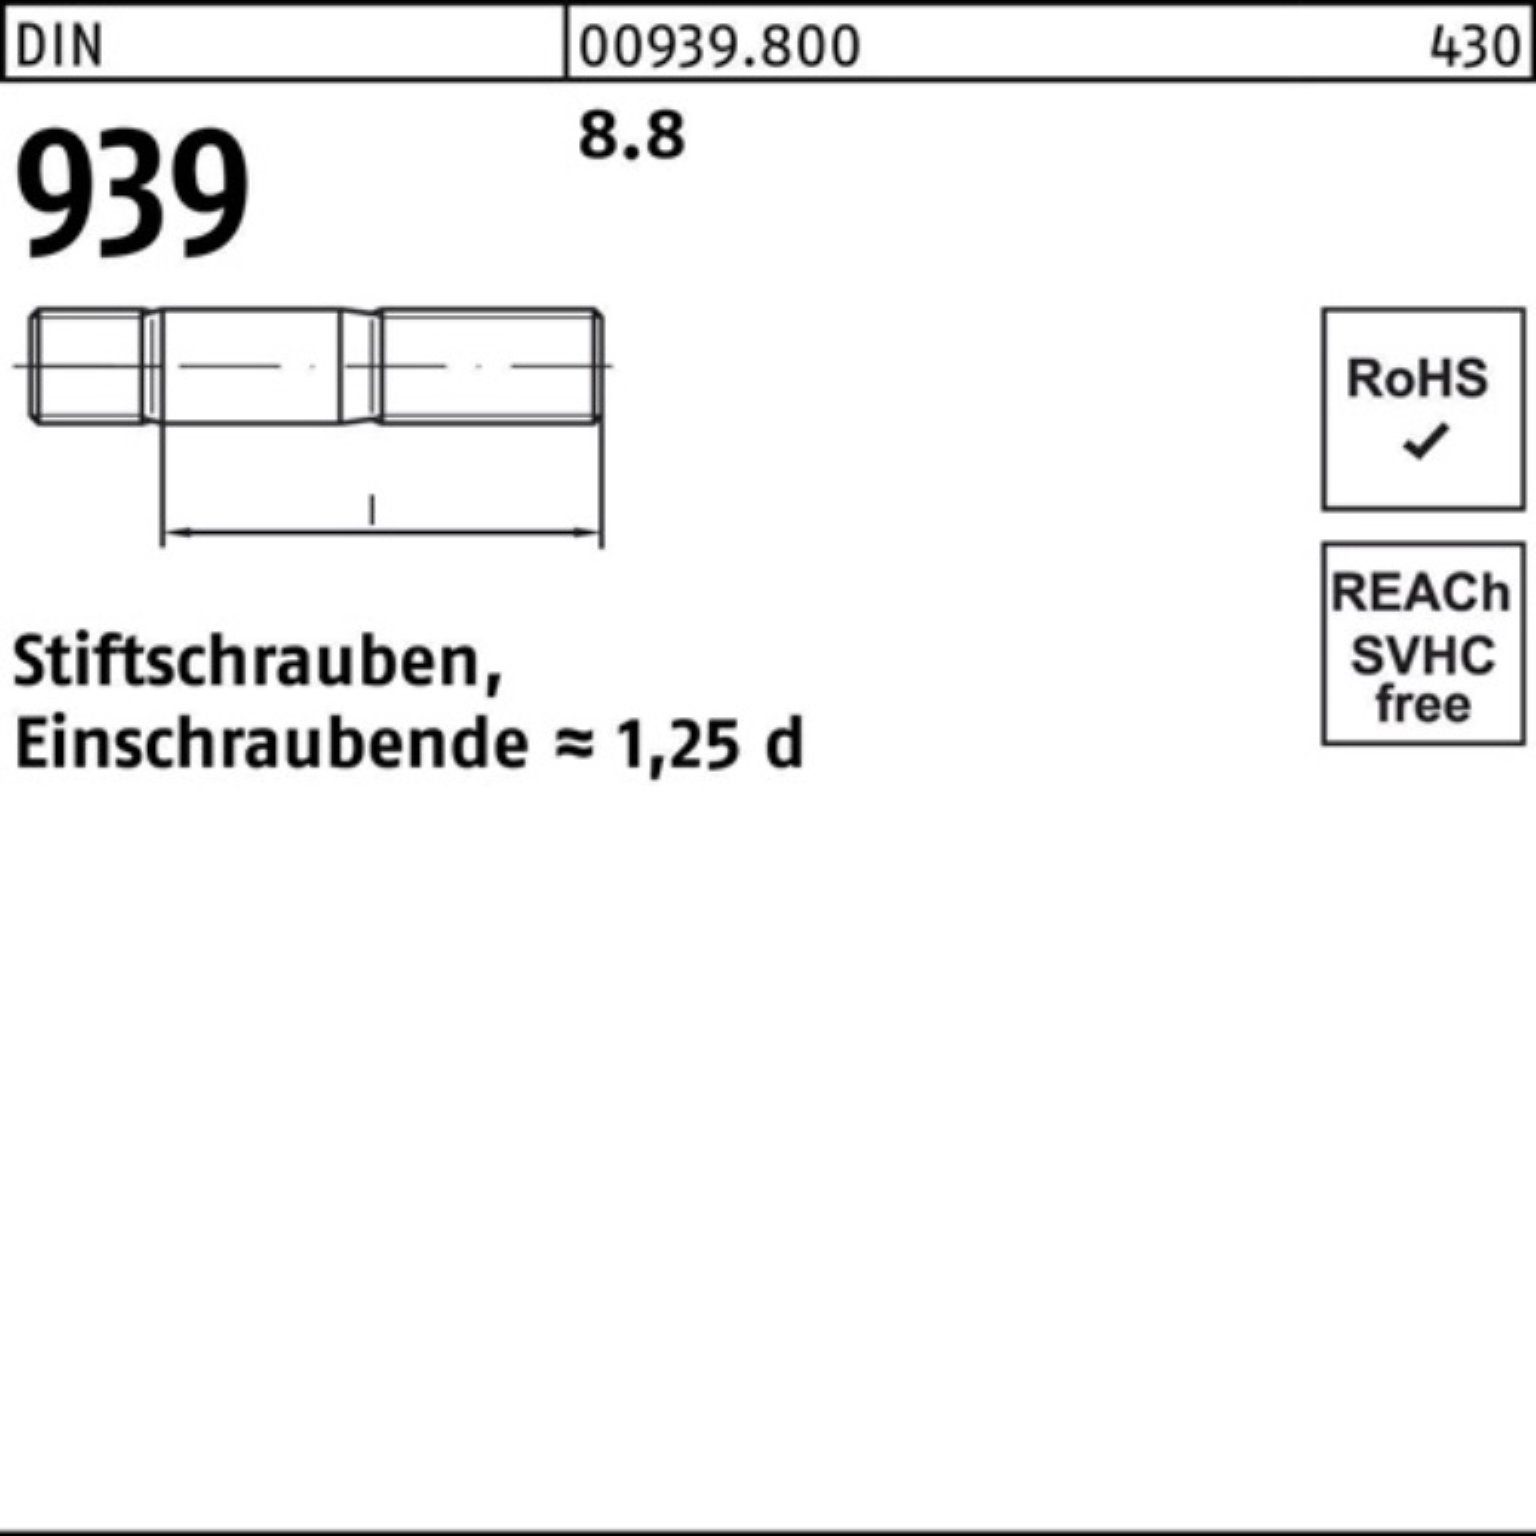 Reyher Stiftschraube 100er Pack Stiftschraube 60 S M12x Einschraubende=1,25d DIN 25 939 8.8